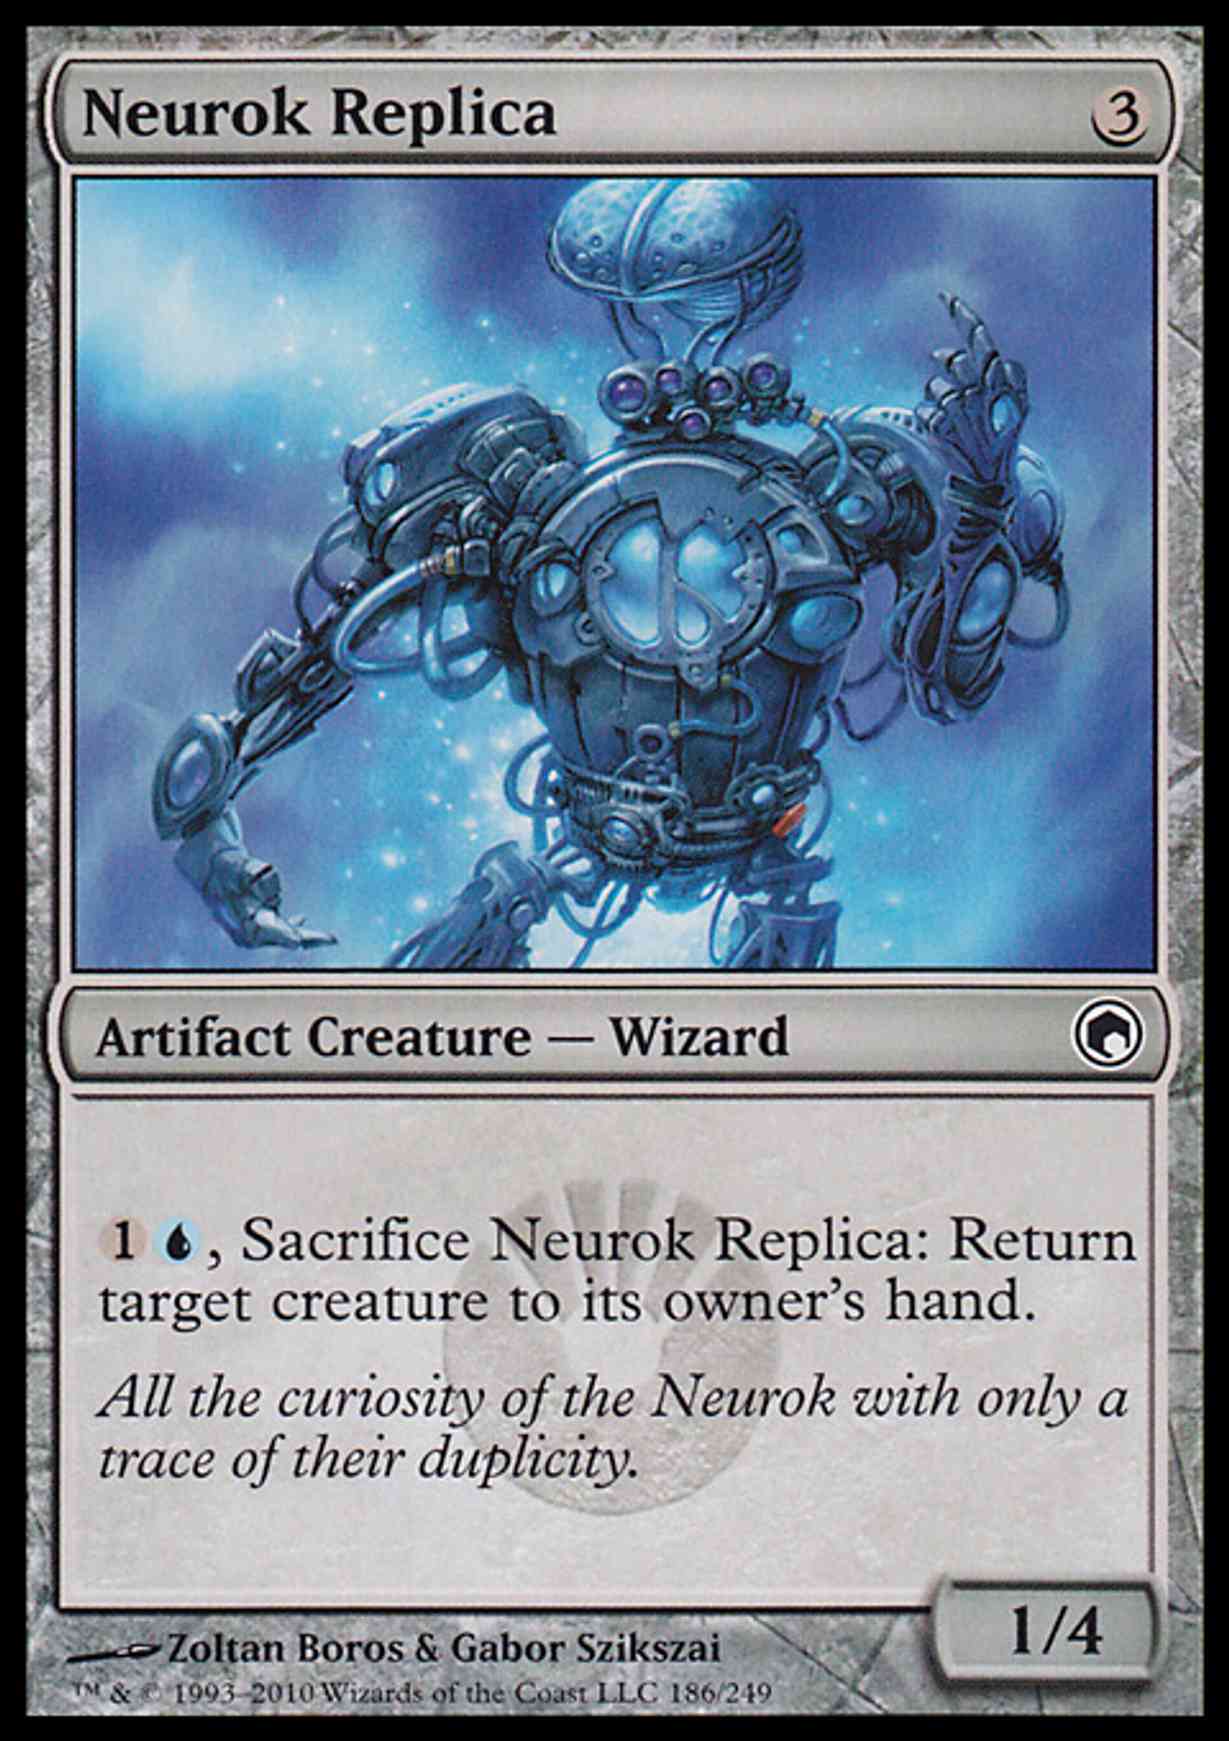 Neurok Replica magic card front